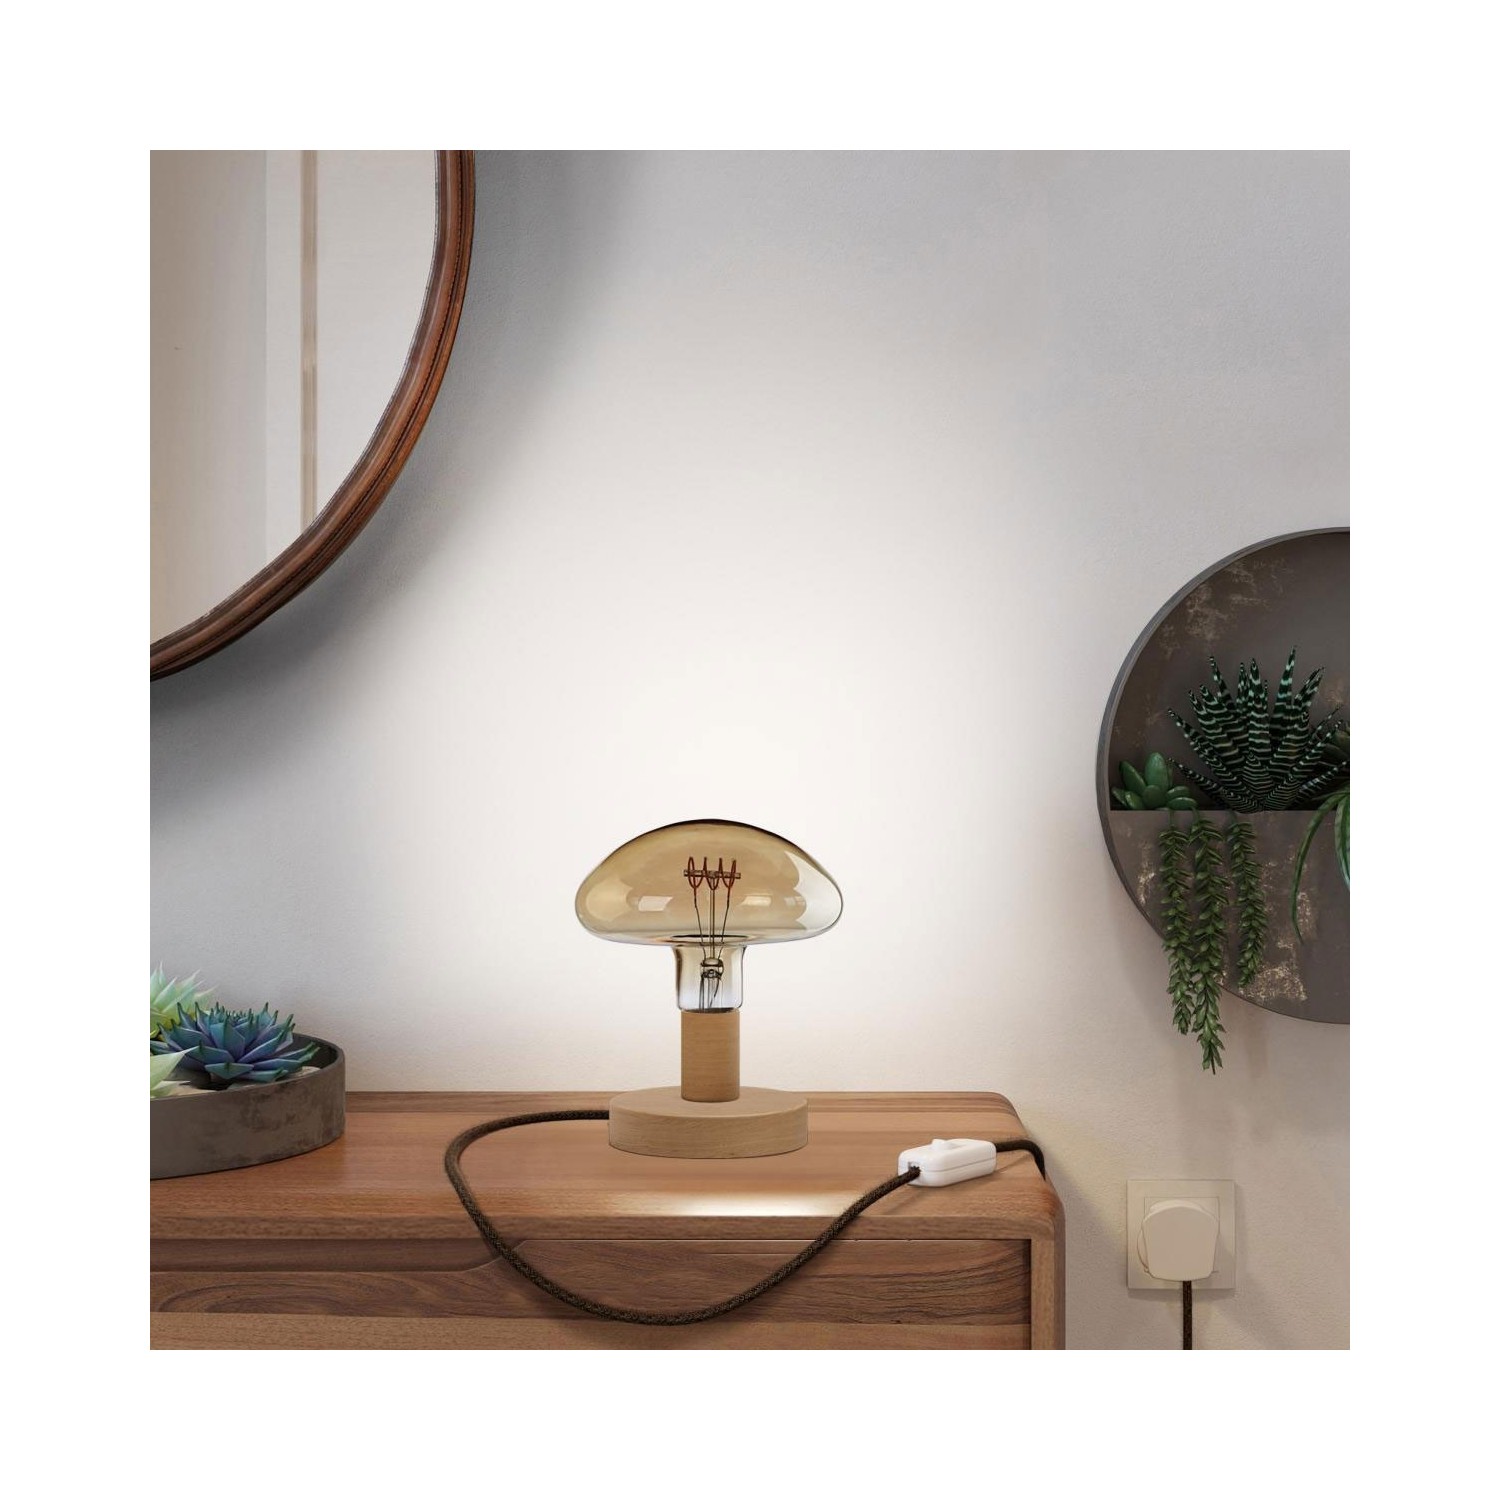 Posaluce Mushroom Wooden Table Lamp